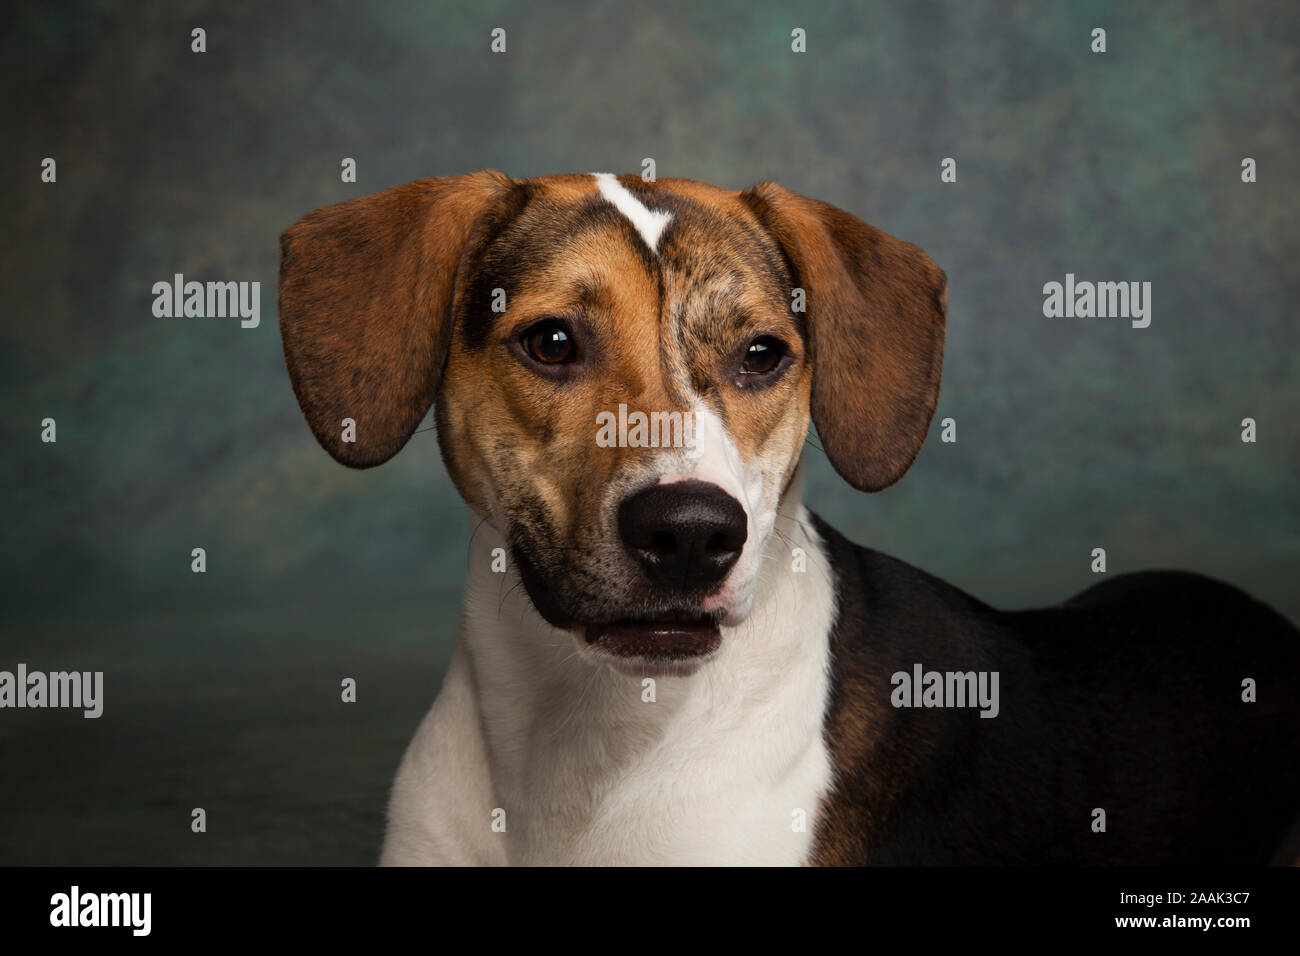 Studio portrait of dog Banque D'Images